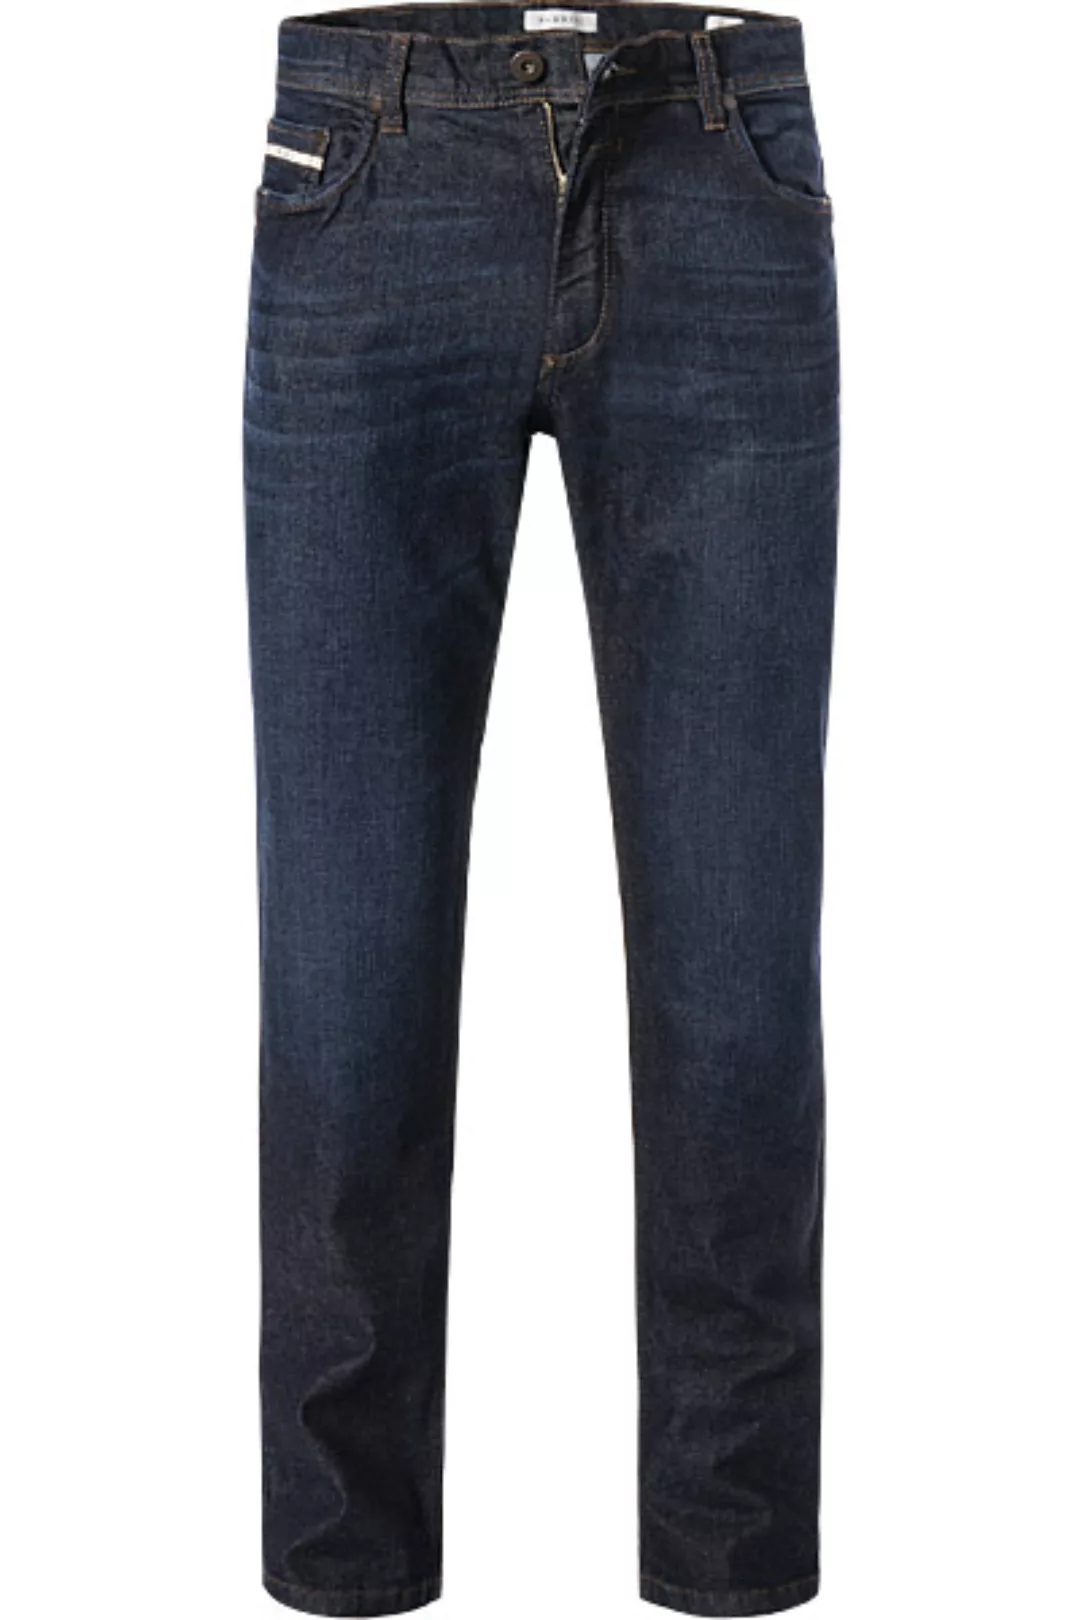 bugatti Jeans 3919D/26612/394 günstig online kaufen